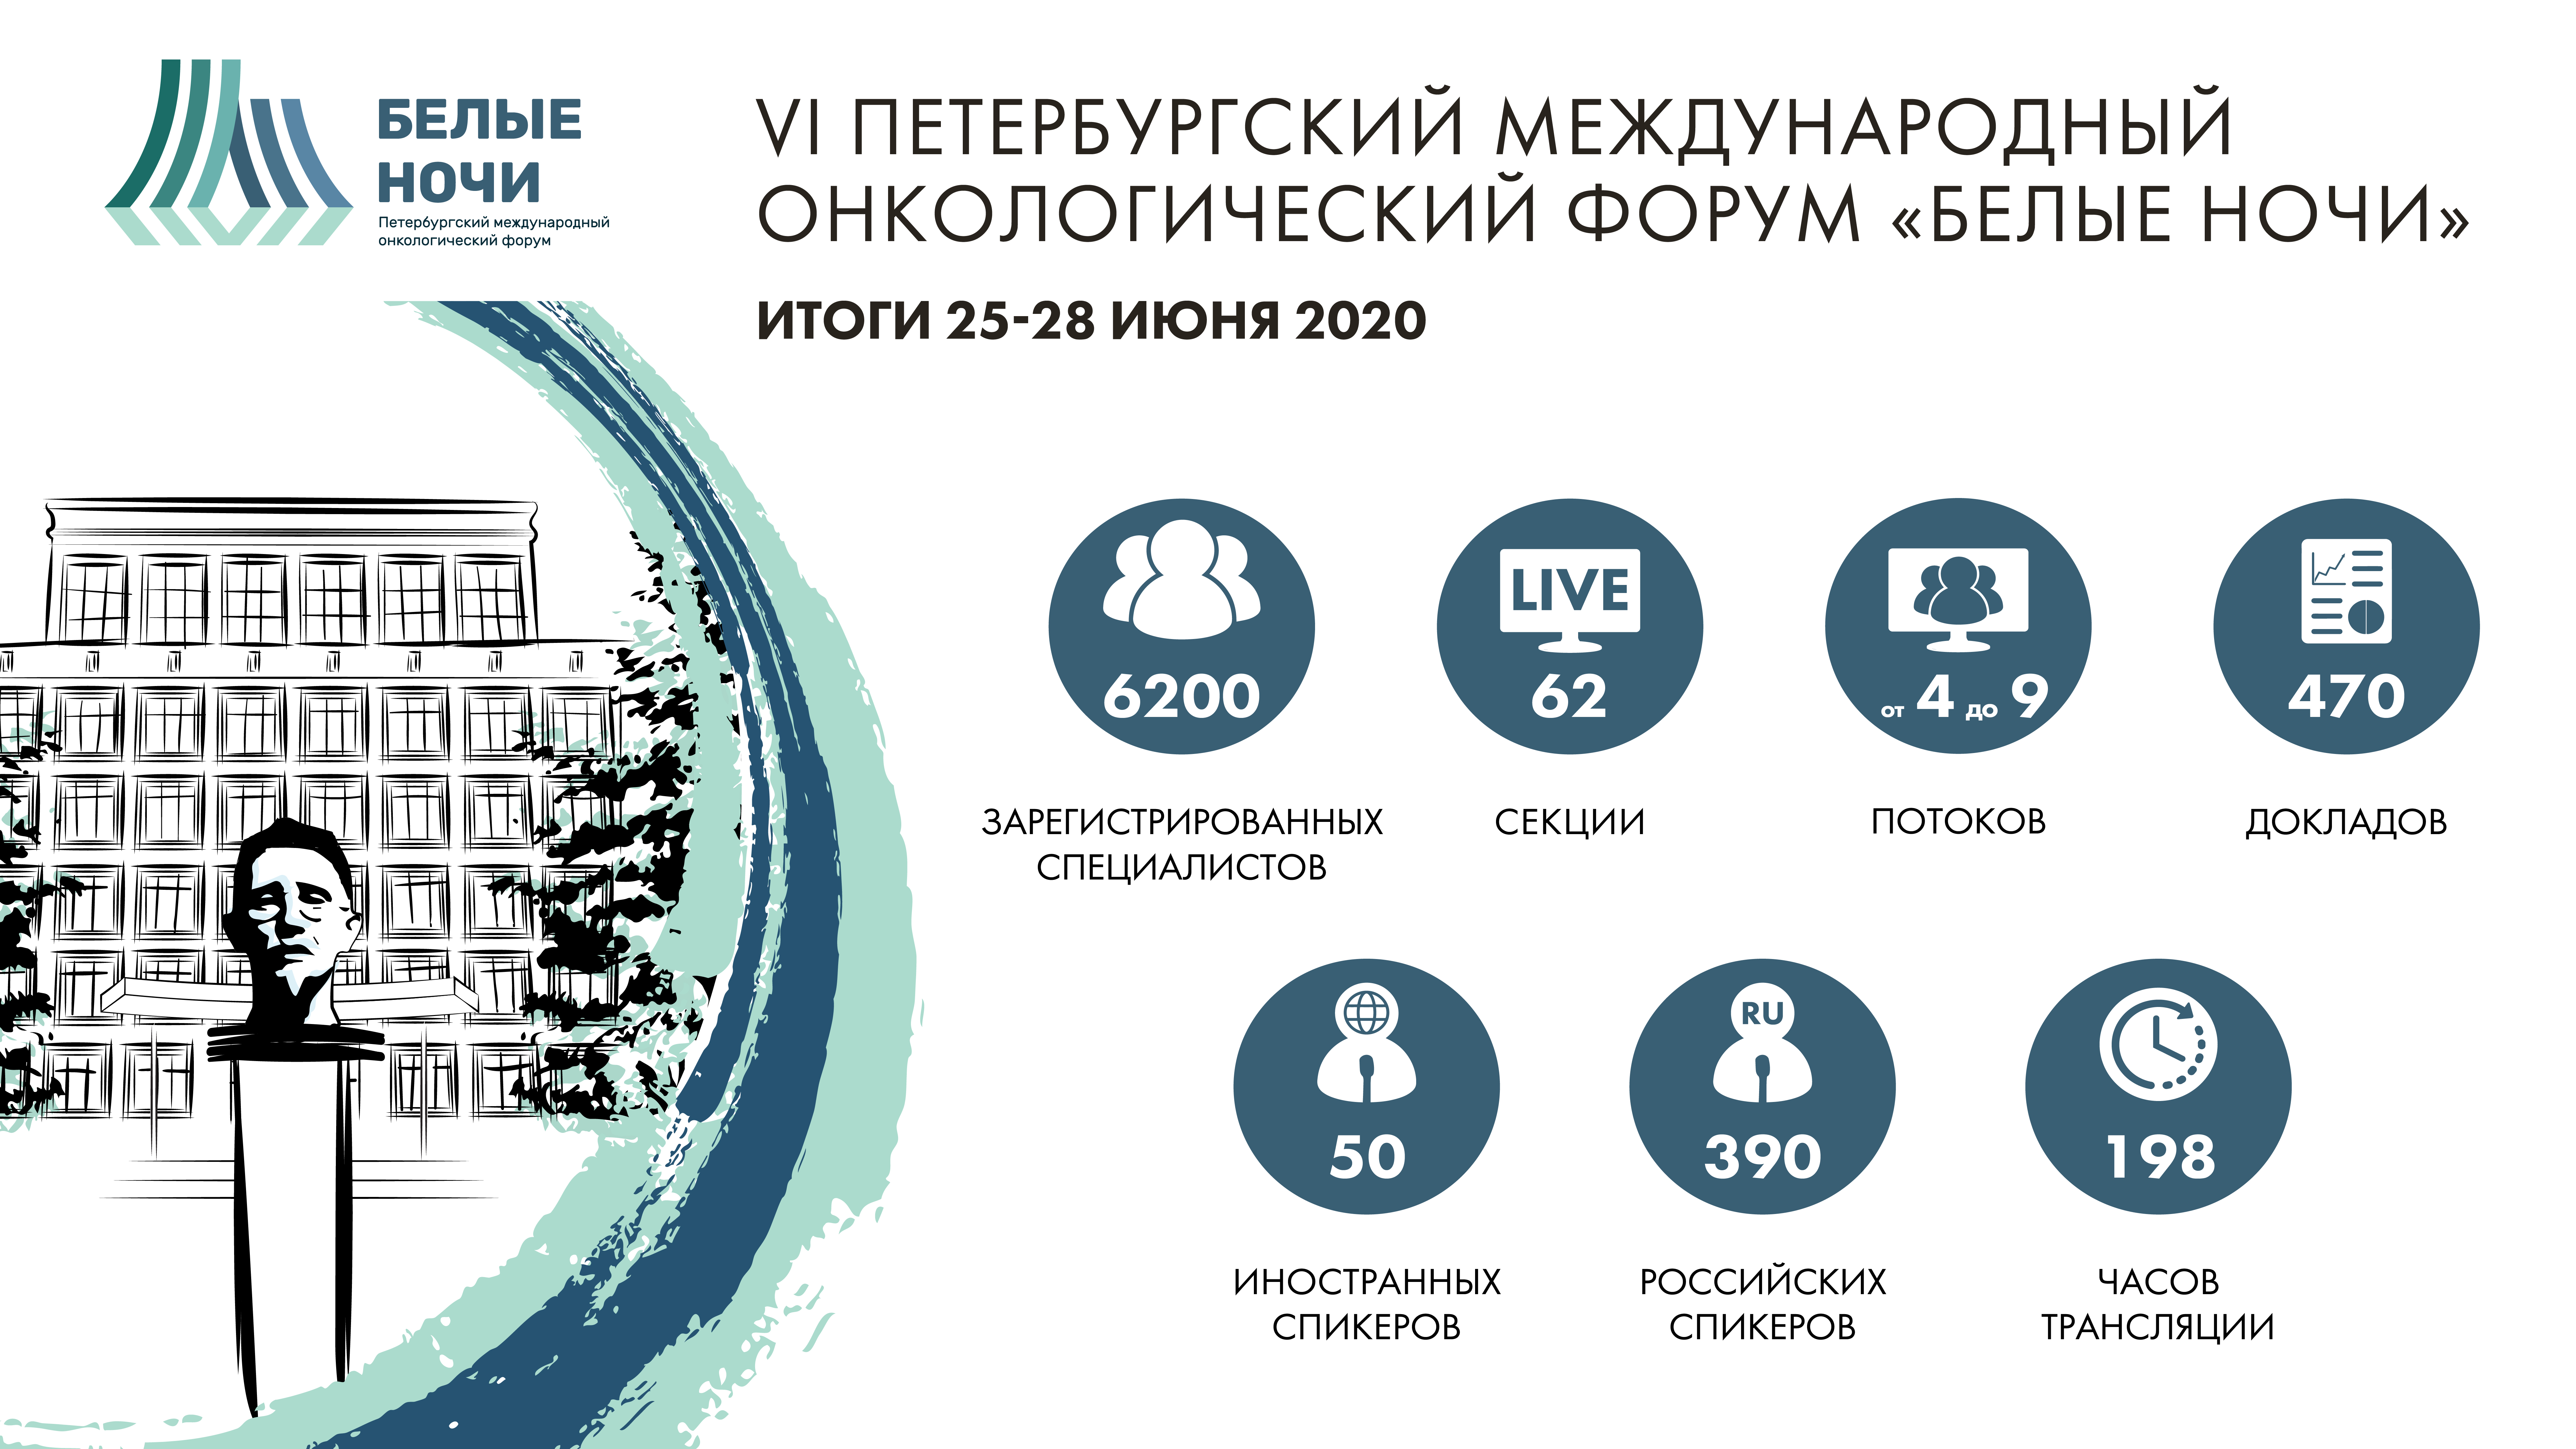 VI Петербургский международный онкологический форум «Белые ночи 2020»: коротко о главном